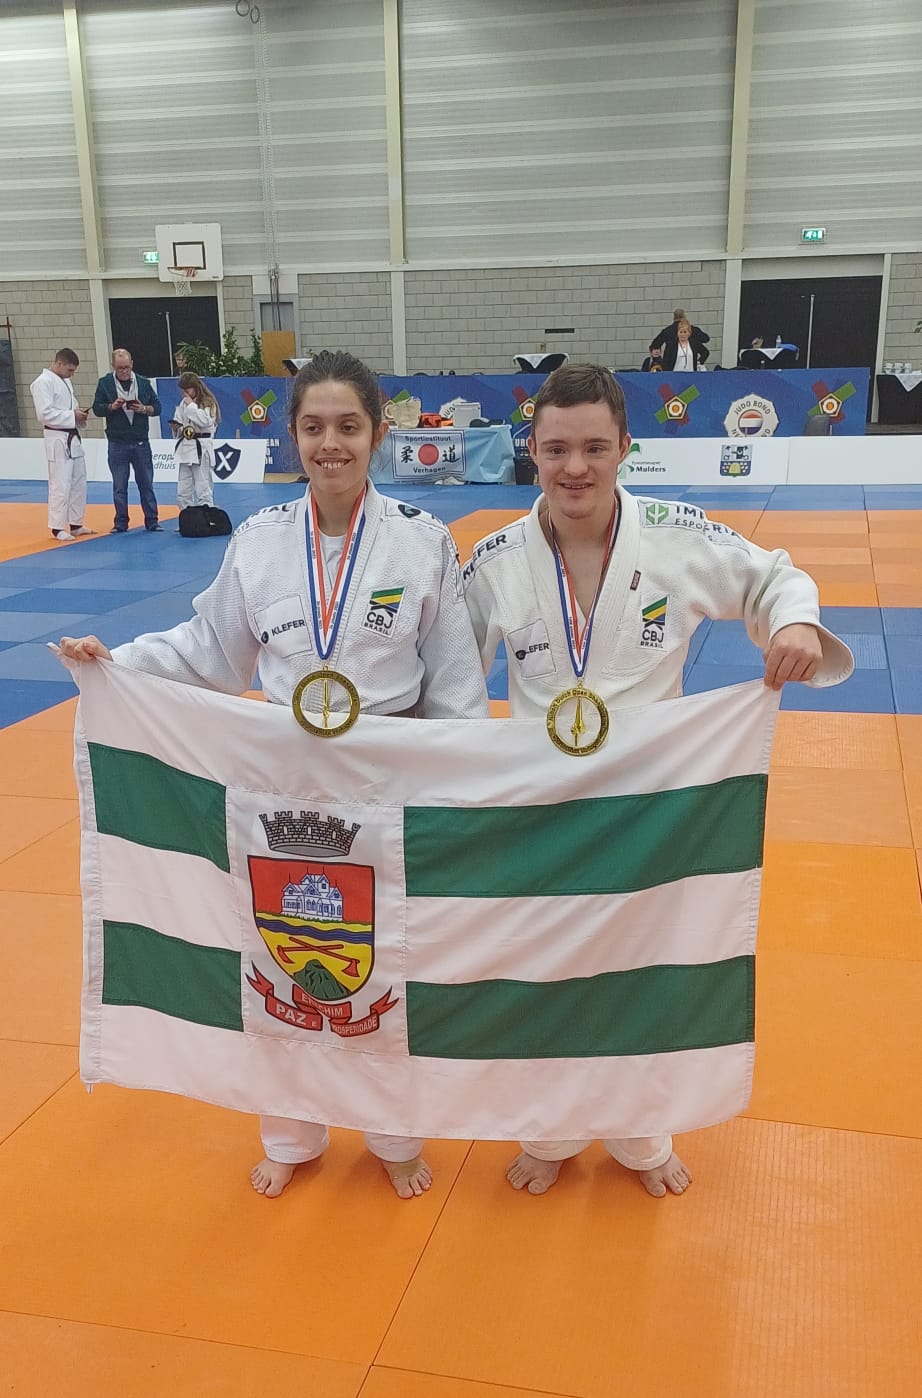 Judo de Erechim conquista medalhas na Holanda